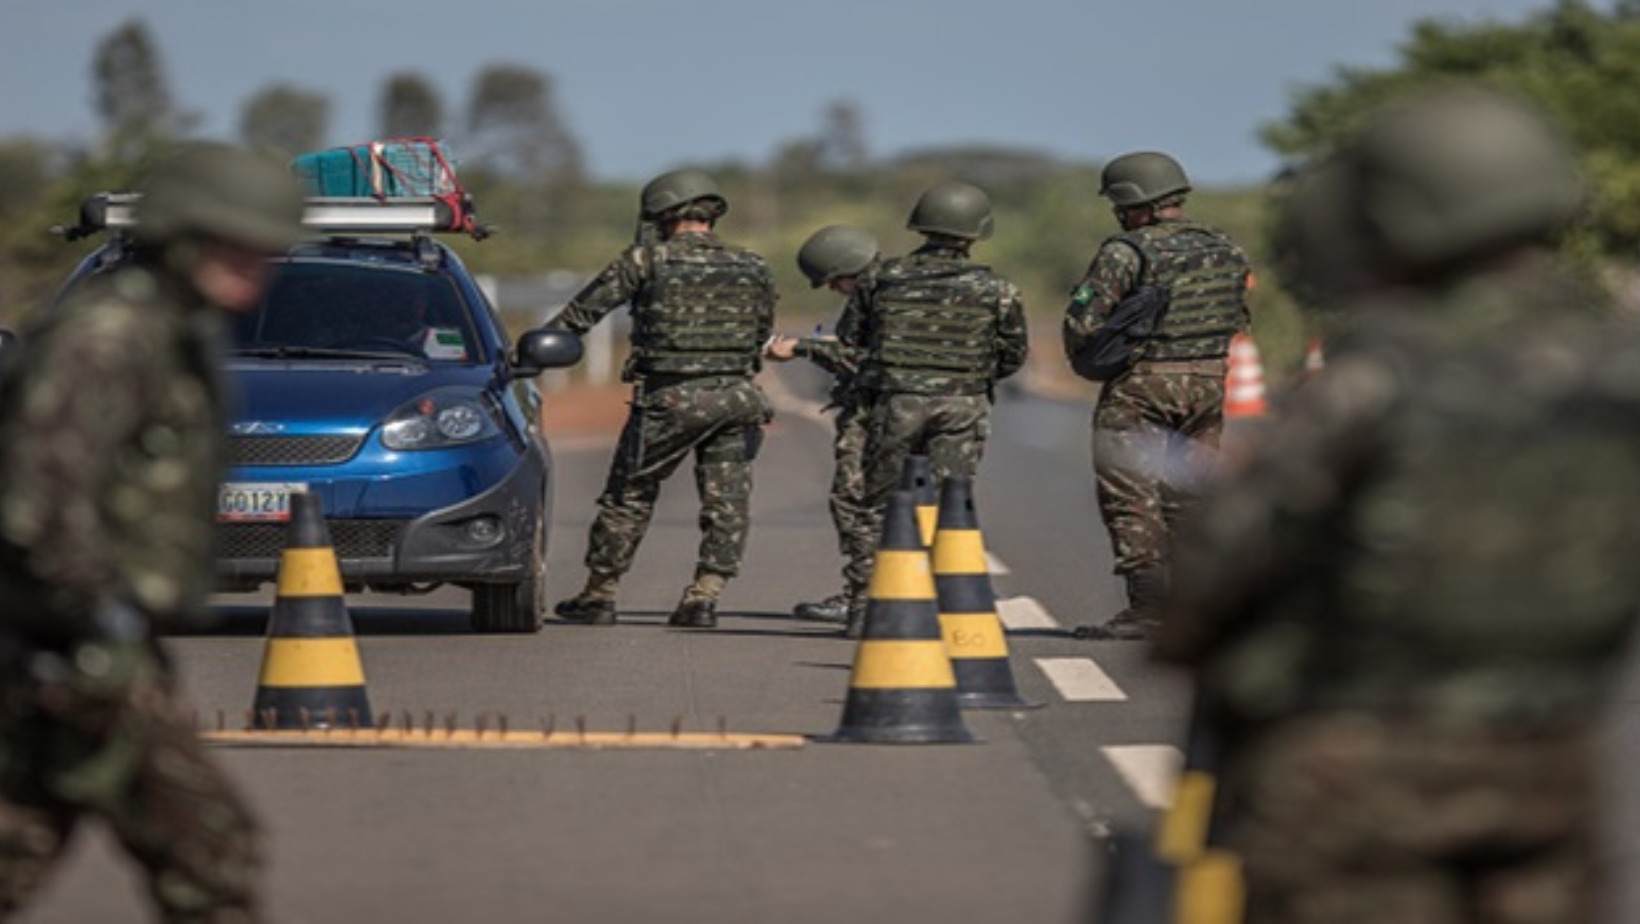 Policía Nacional del Ecuador. Foto: Fuente externa